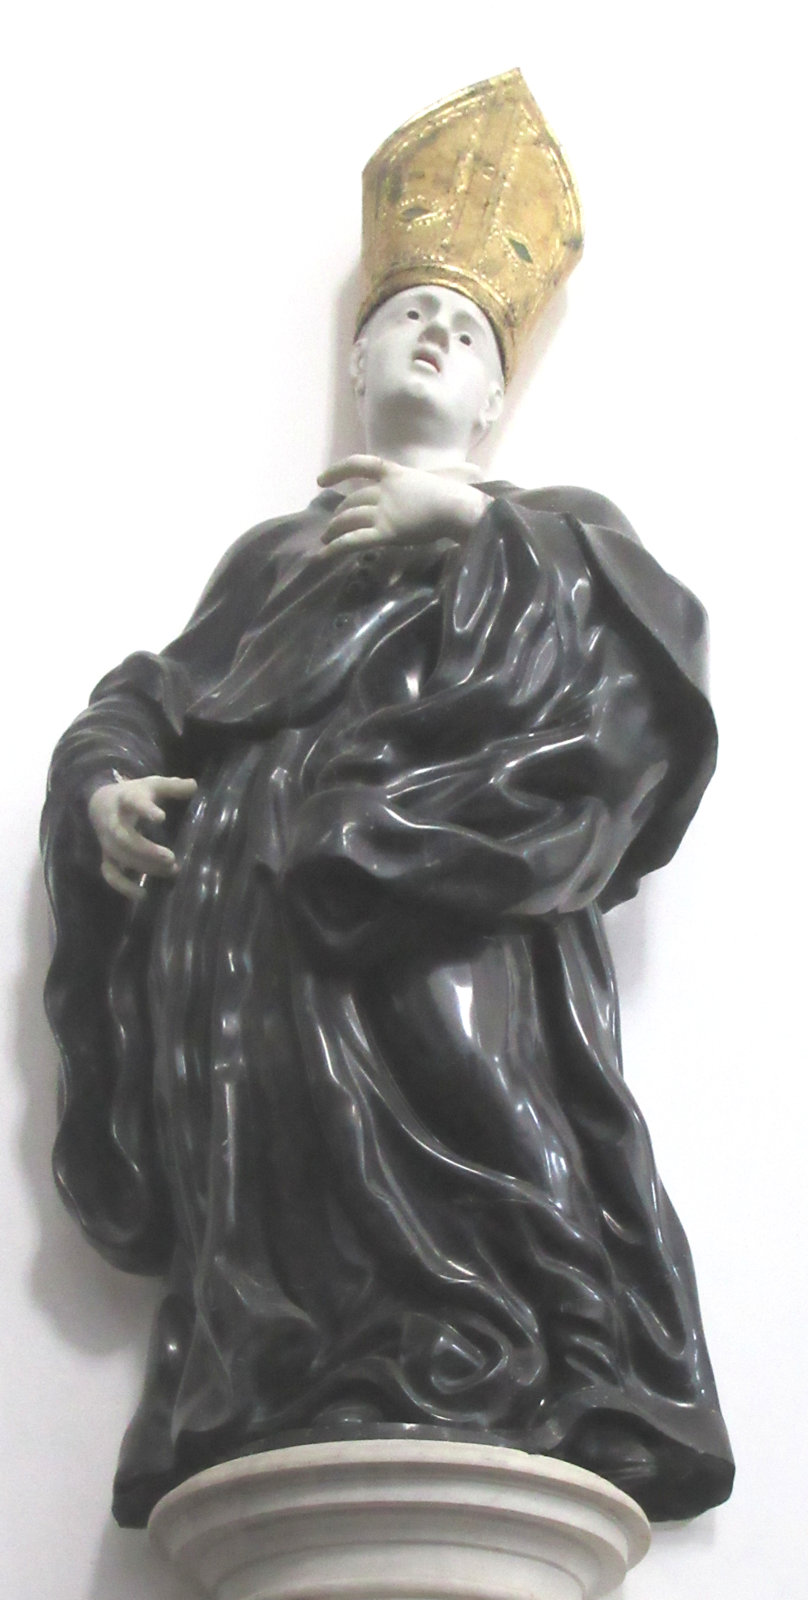 Statue eines Abtbischofs in der Basilika des Klosters San Martino delle Scale bei Palermo